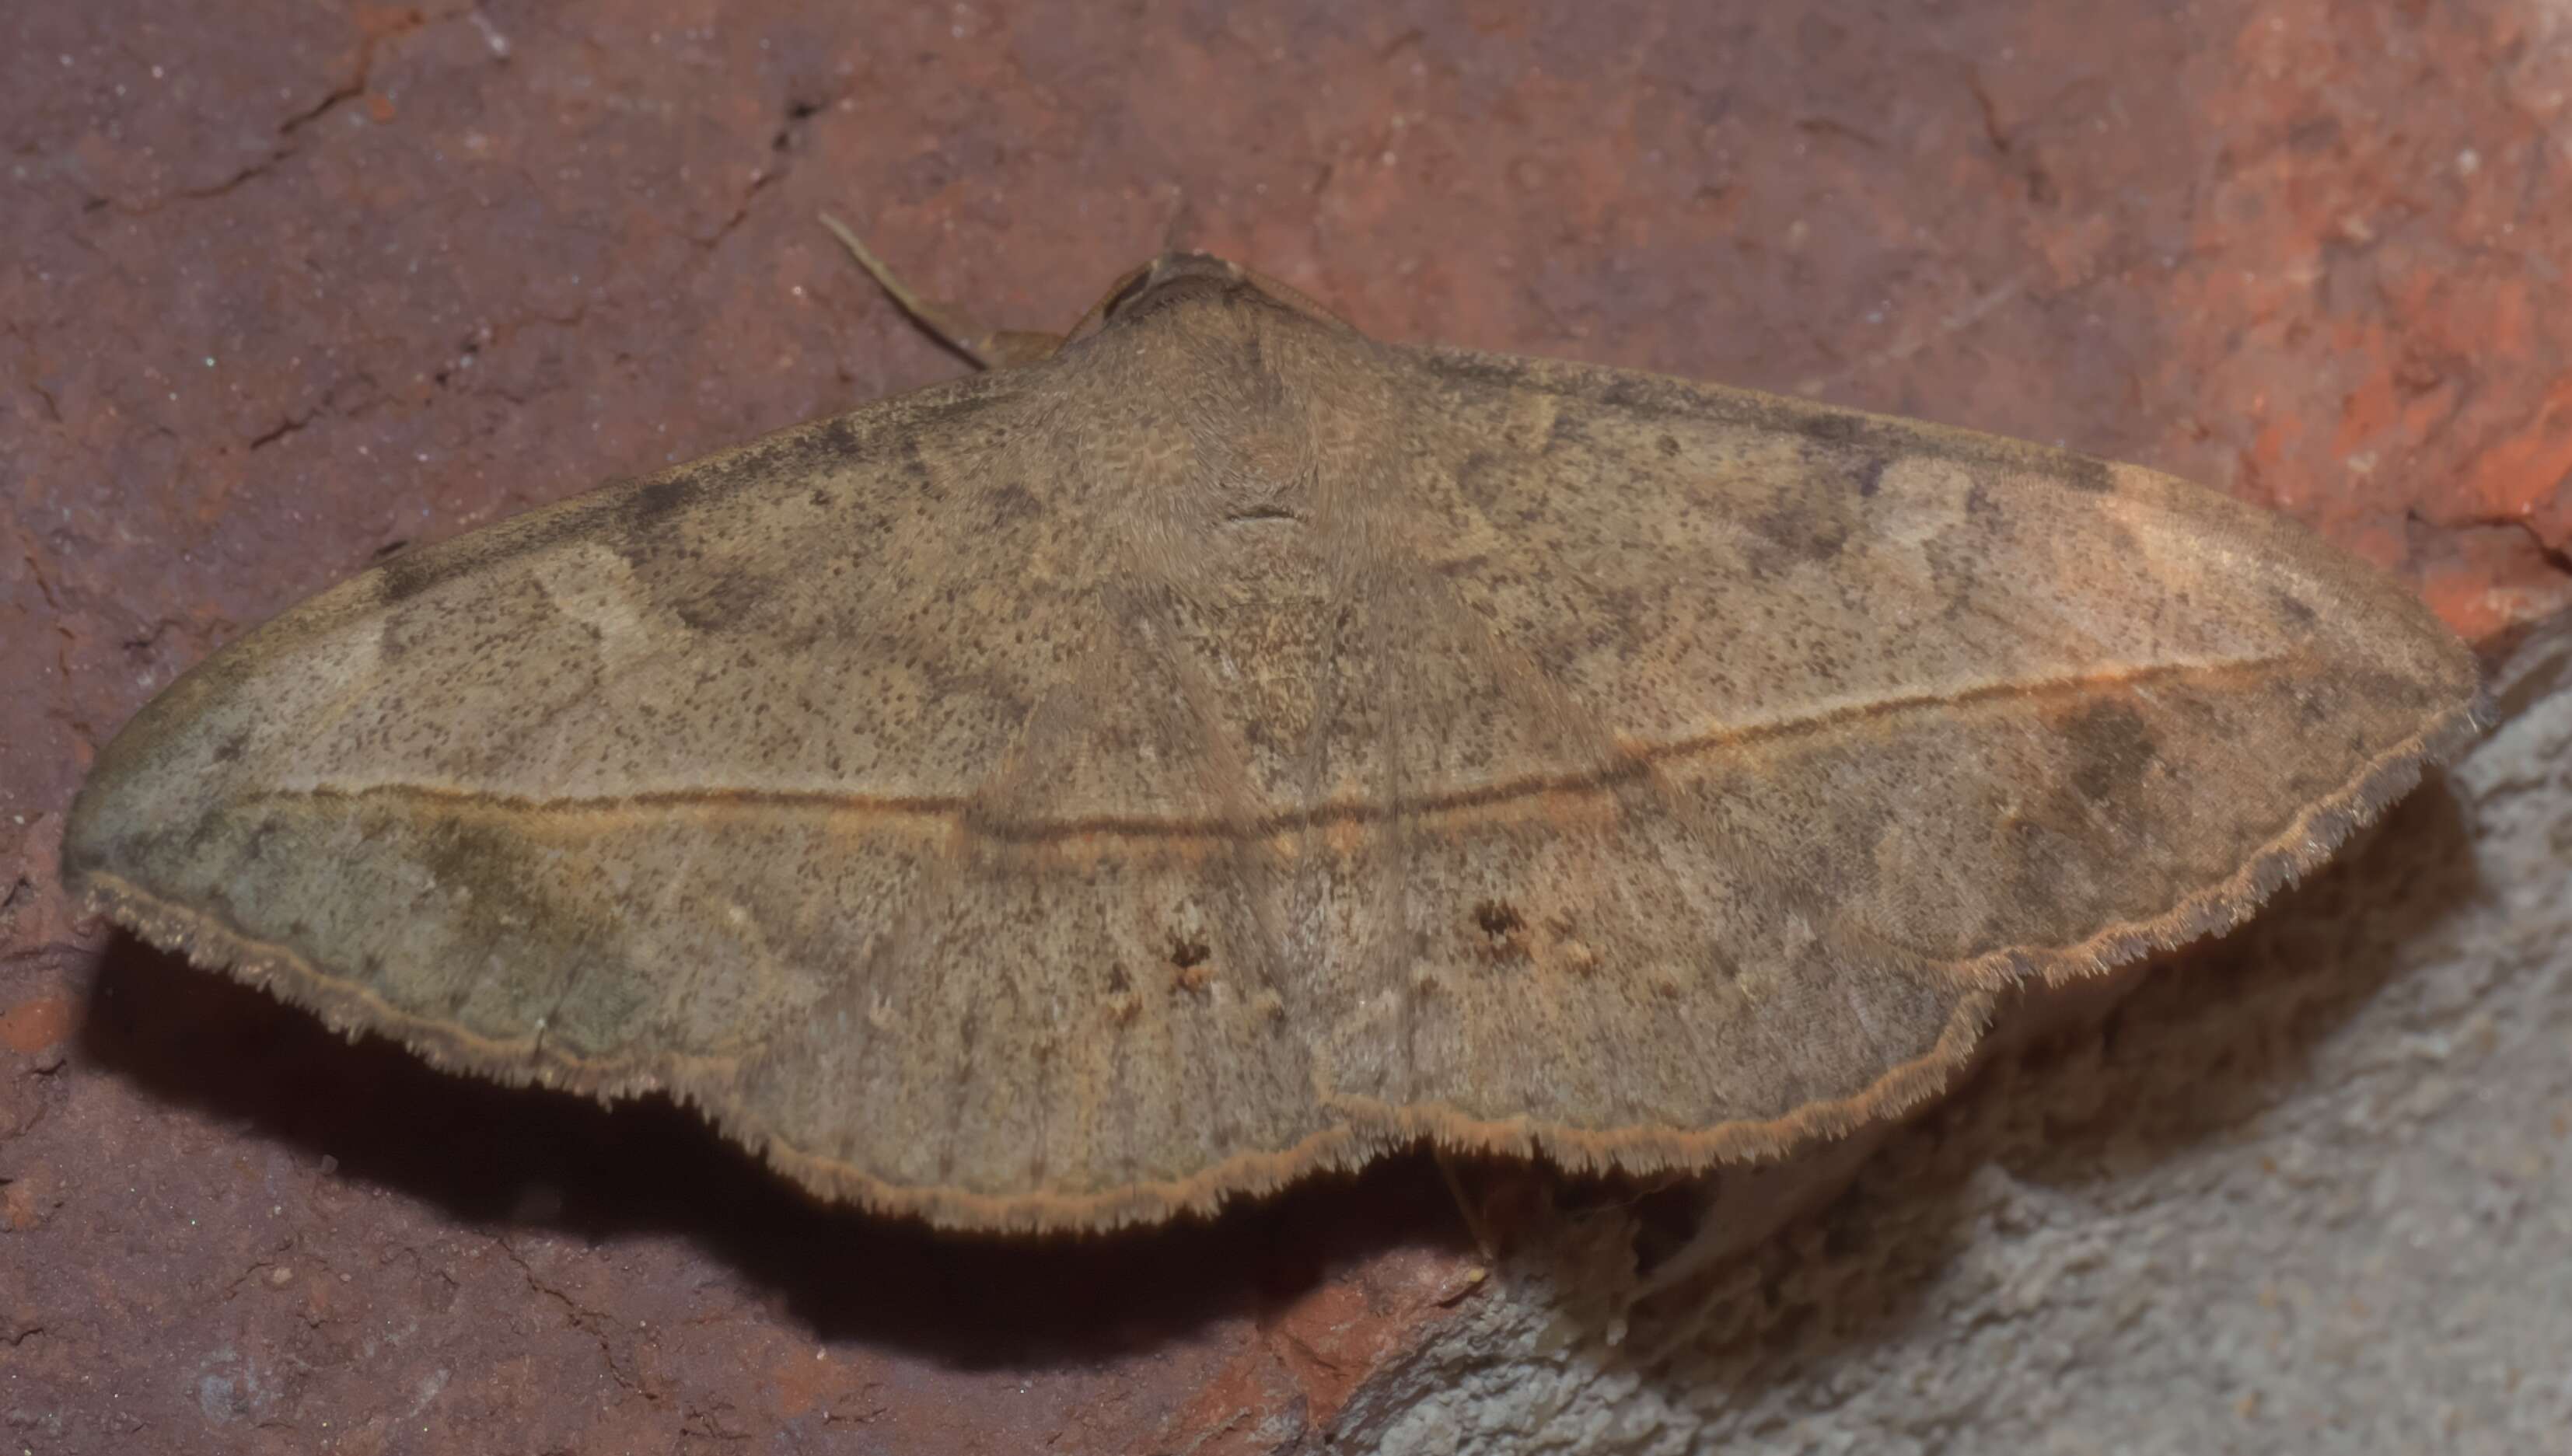 Image of Velvetbean Caterpillar Moth